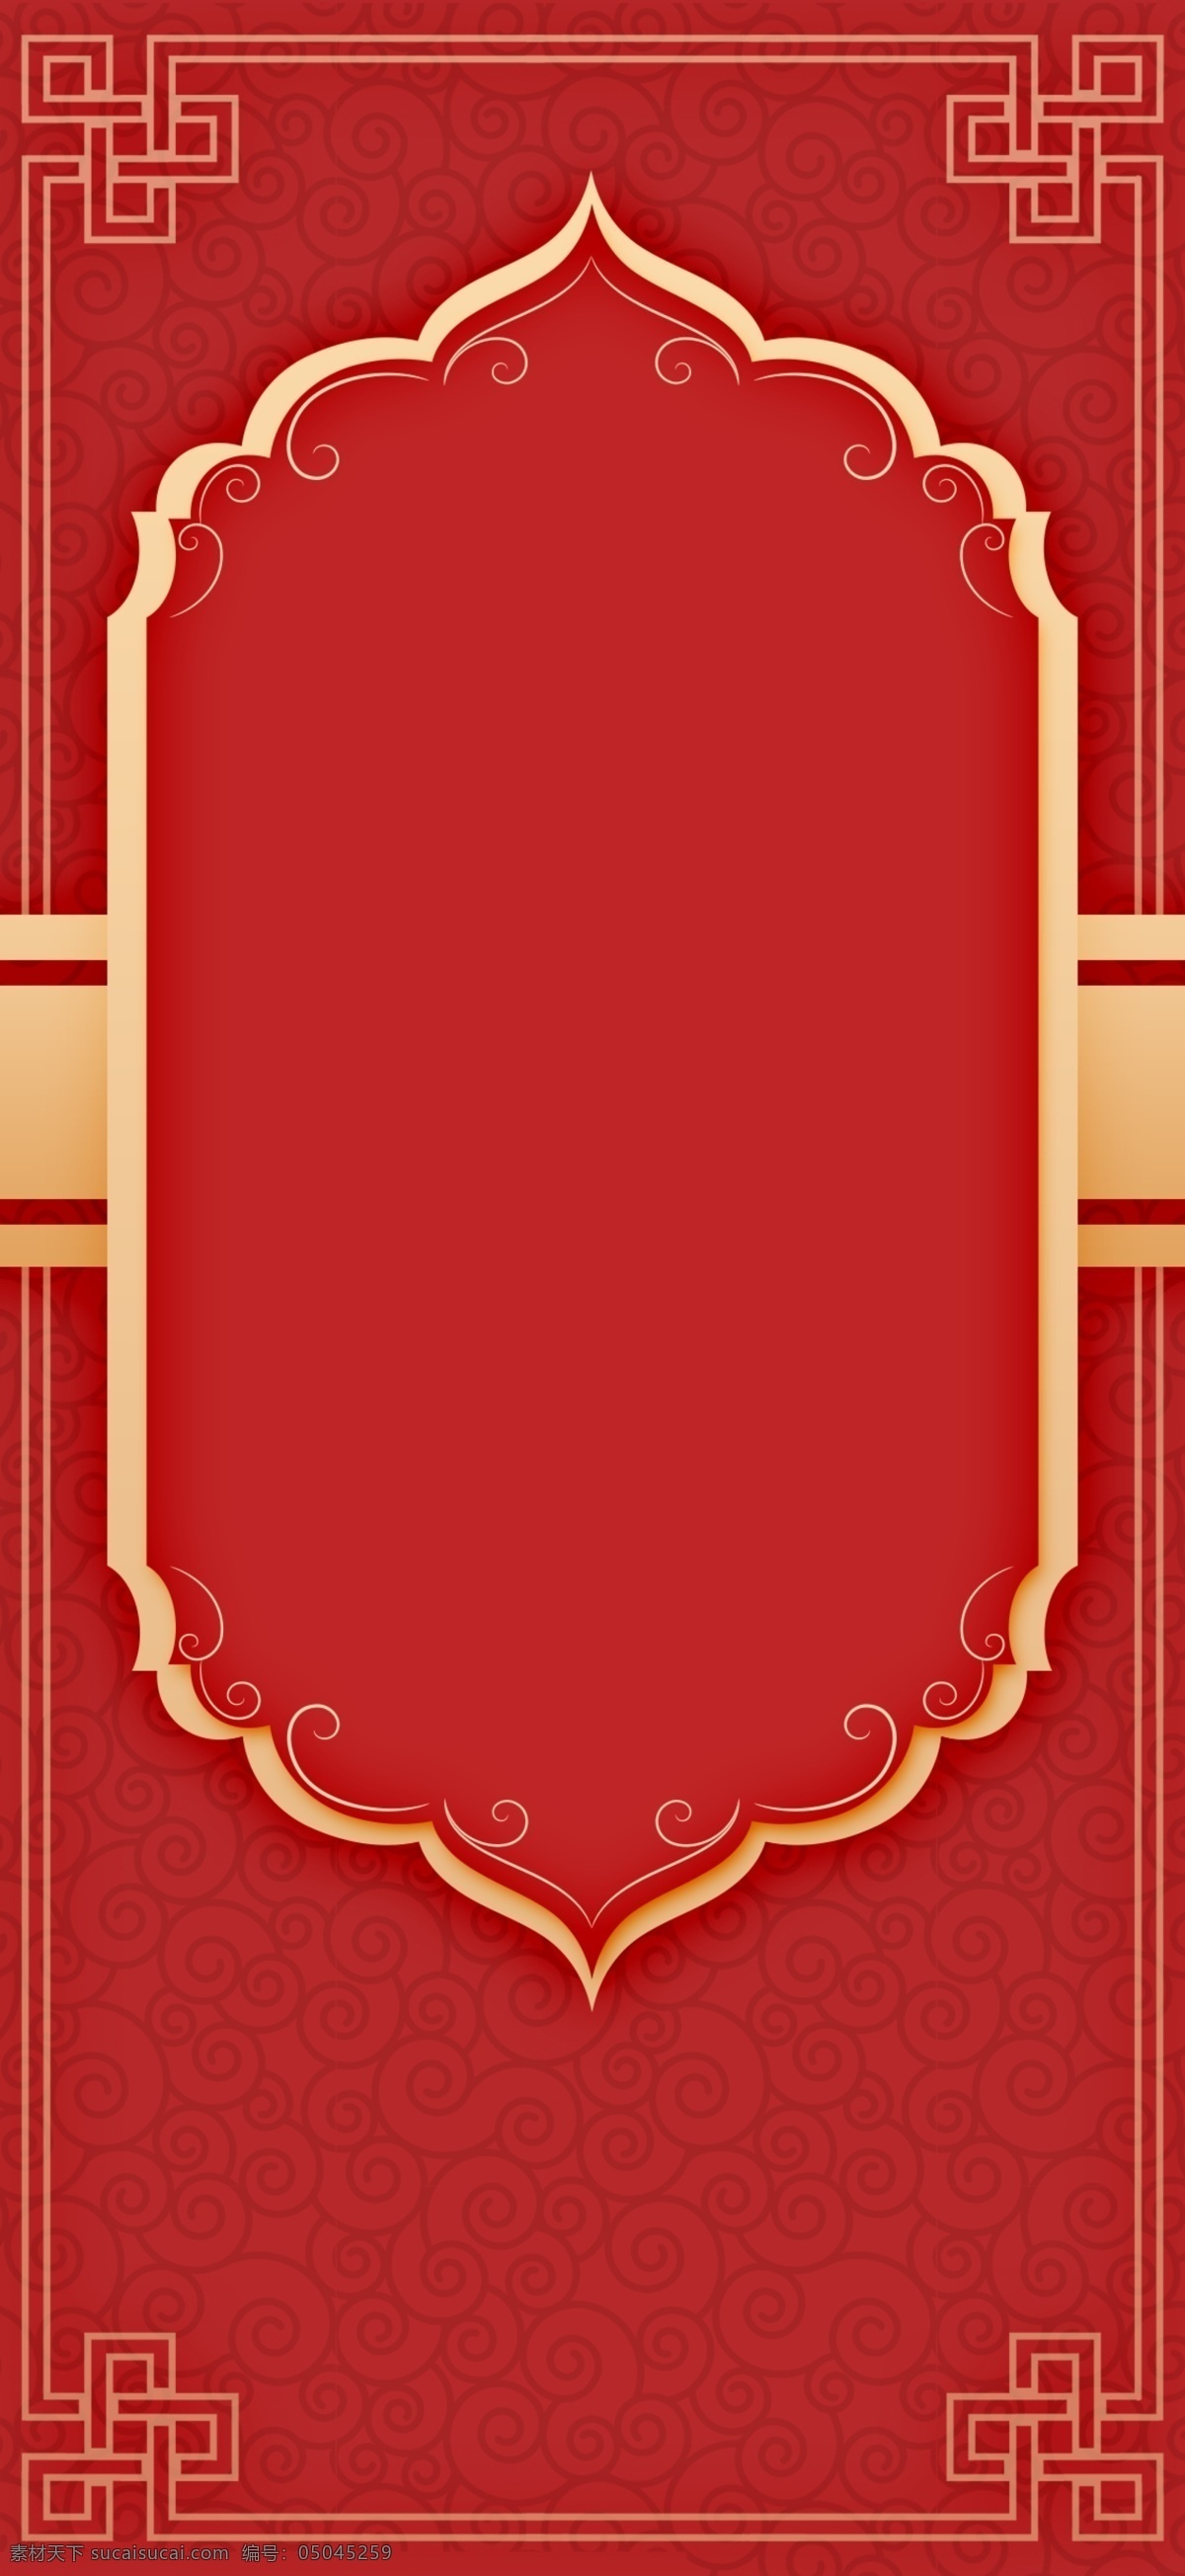 红色 结婚 婚礼 背景 中国风 喜庆 婚礼背景 背景素材 底纹边框 背景底纹